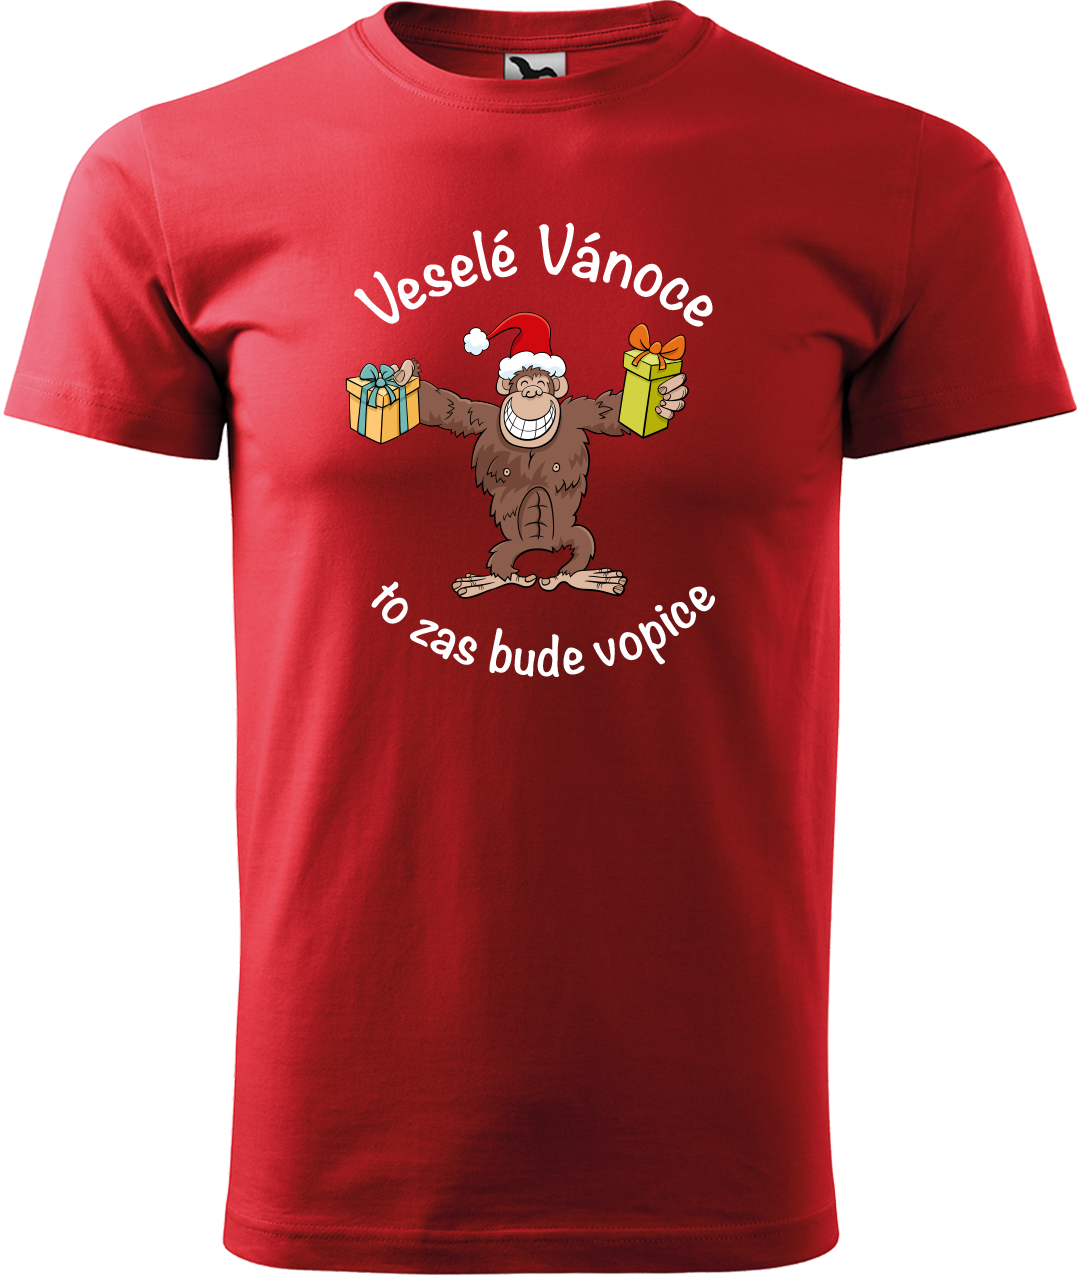 Pánské vánoční tričko - Veselé Vánoce to zas bude vopice (hnědý opičák) Velikost: XL, Barva: Červená (07)